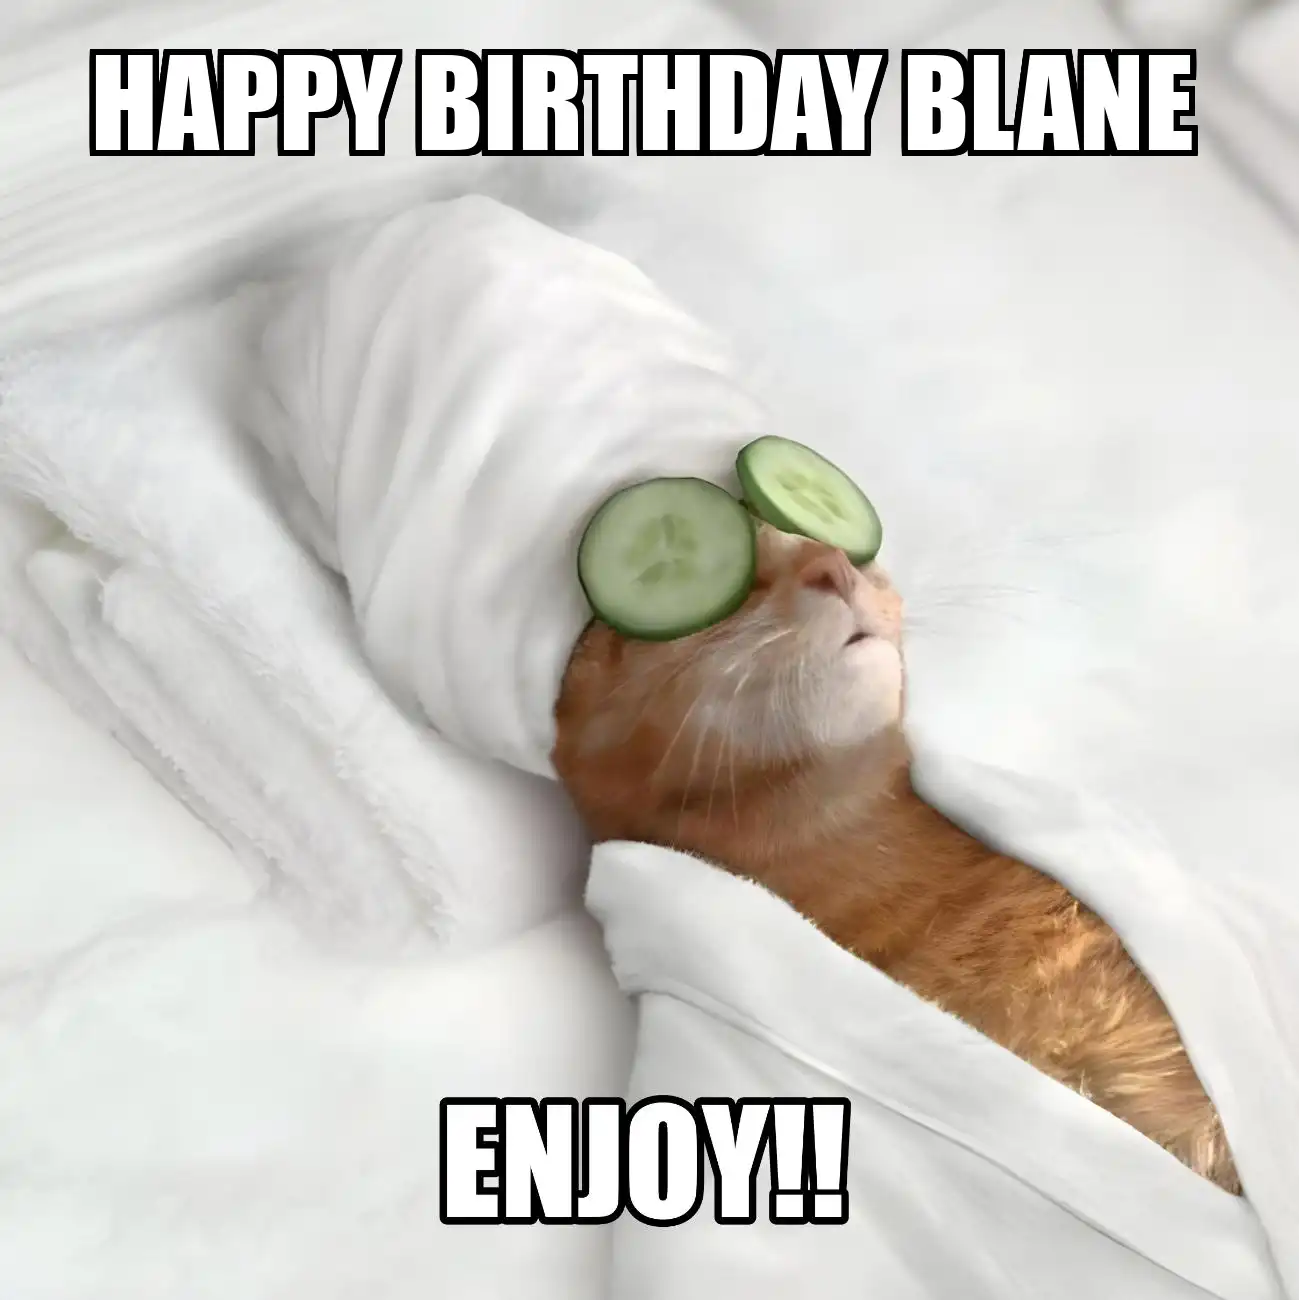 Happy Birthday Blane Enjoy Cat Meme